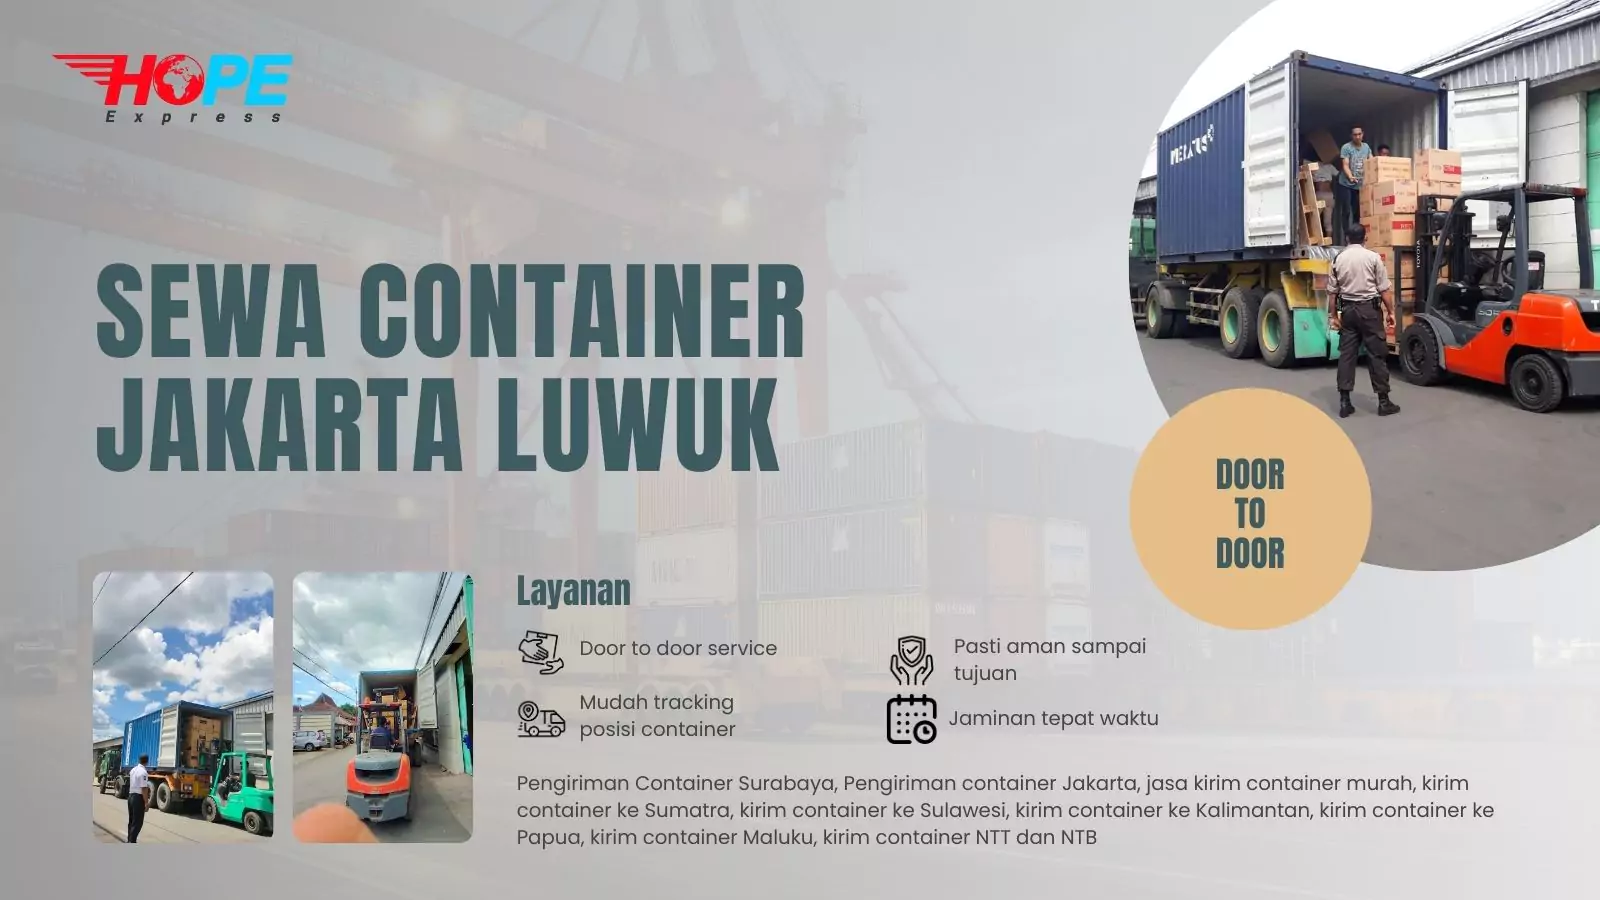 Sewa Container Jakarta Luwuk